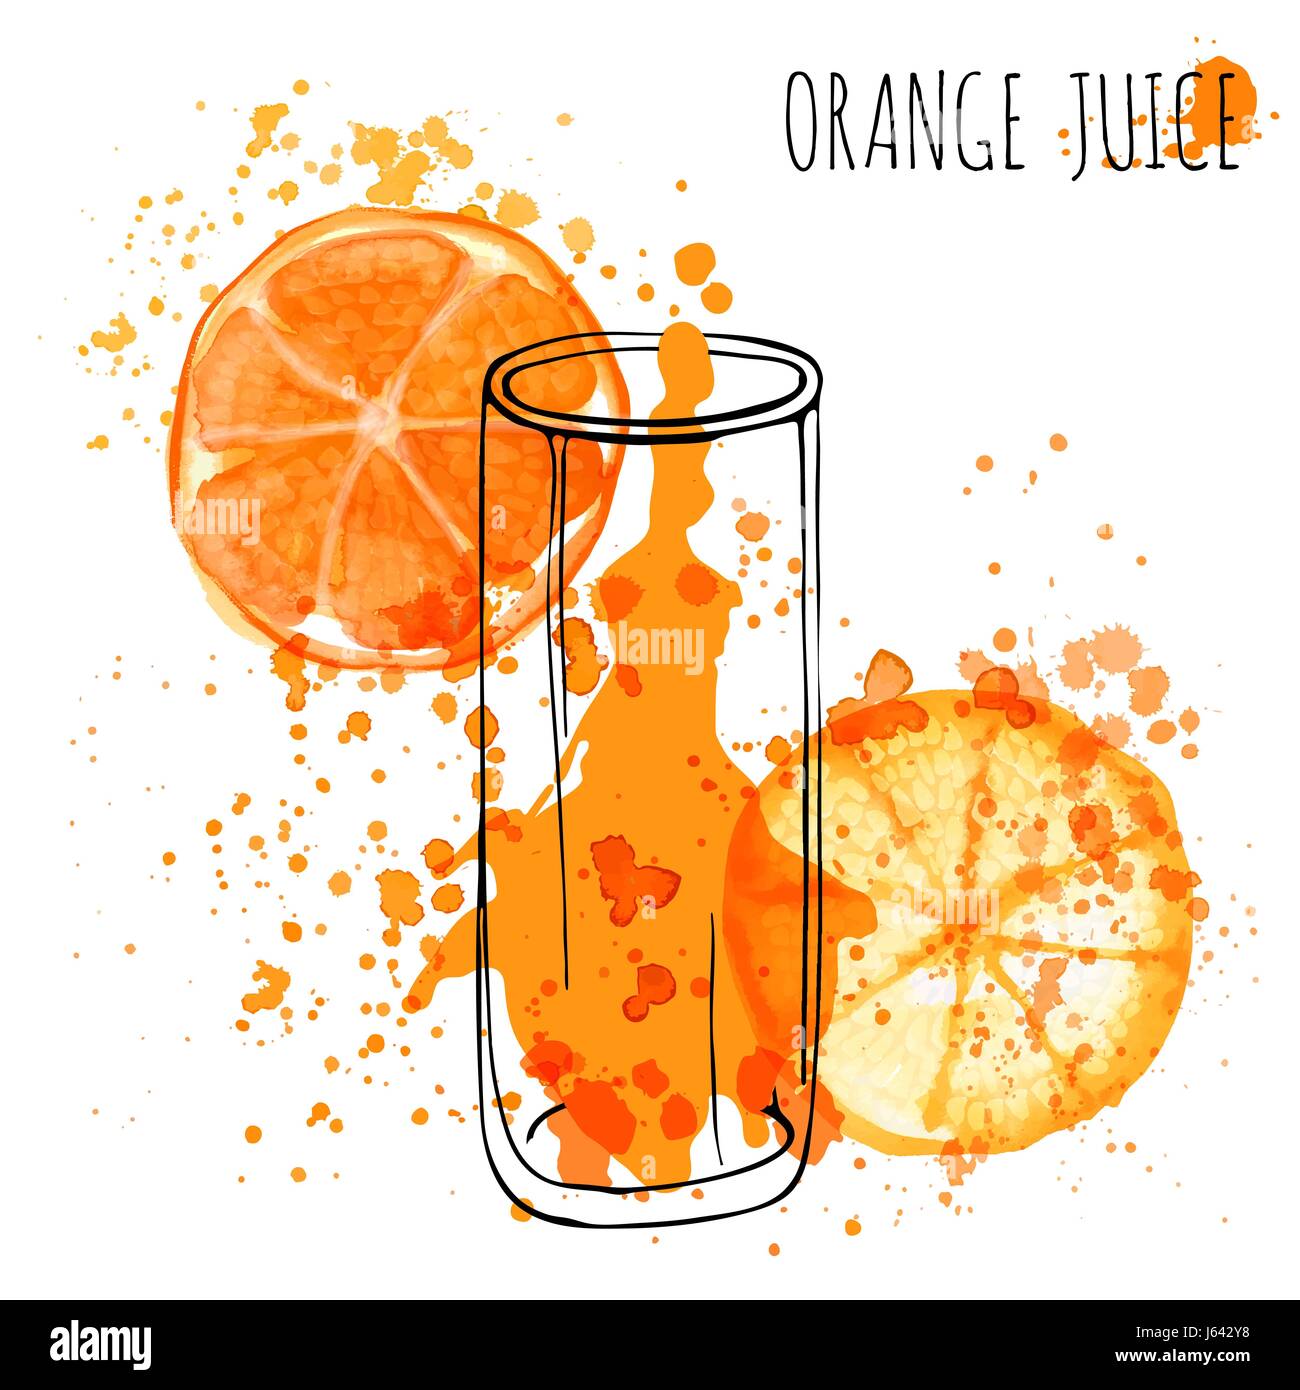 Splash de jus d'Orange, vector illustration aquarelle dessiner à la main. Le jus d'Orange dans le verre dessiné avec des touches Illustration de Vecteur